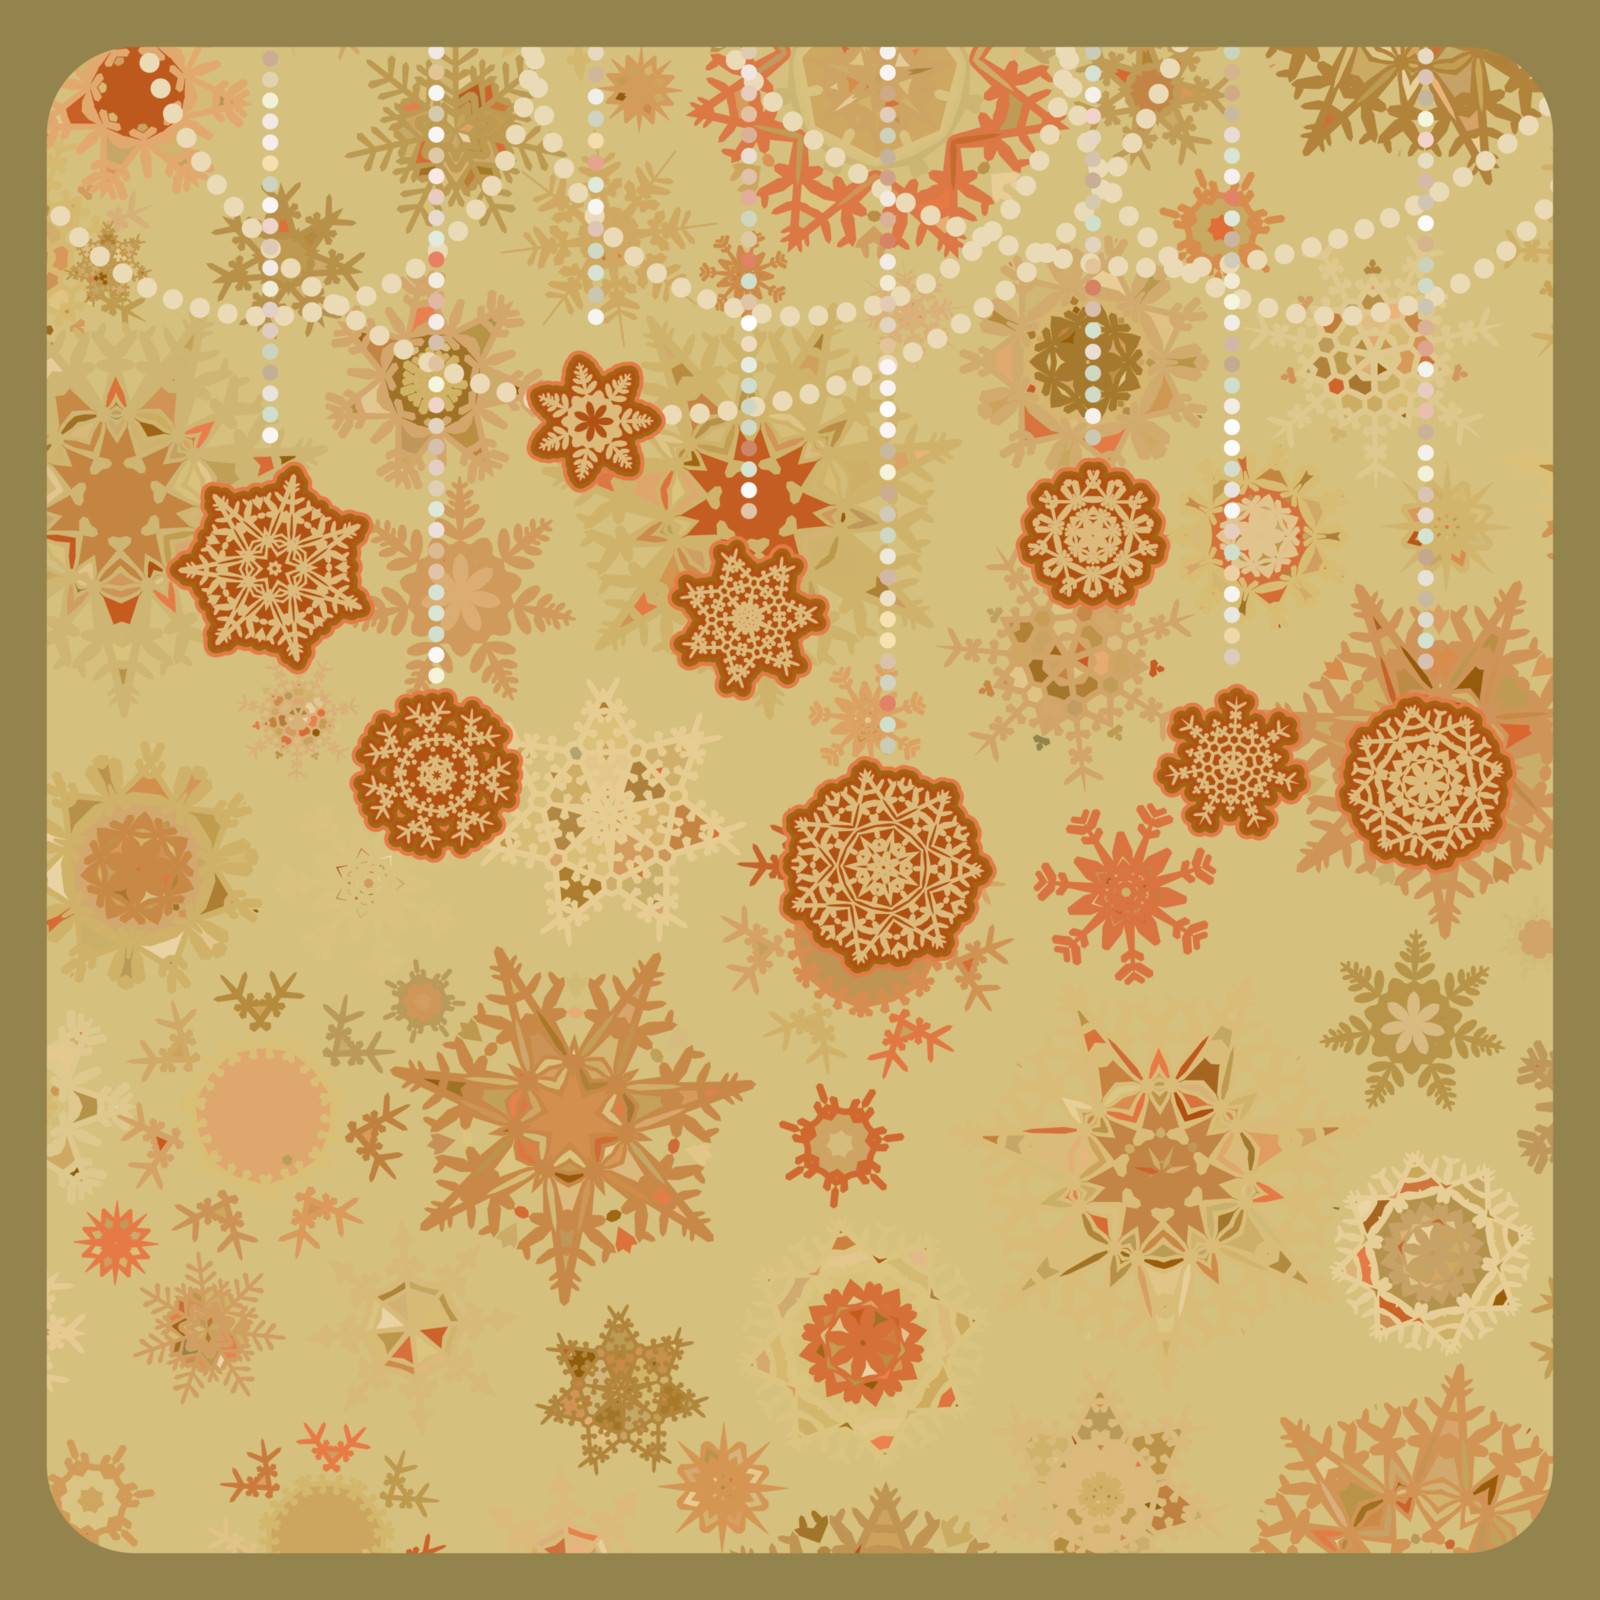 Colorful retro snowflake pattern. EPS 8 by Petrov_Vladimir